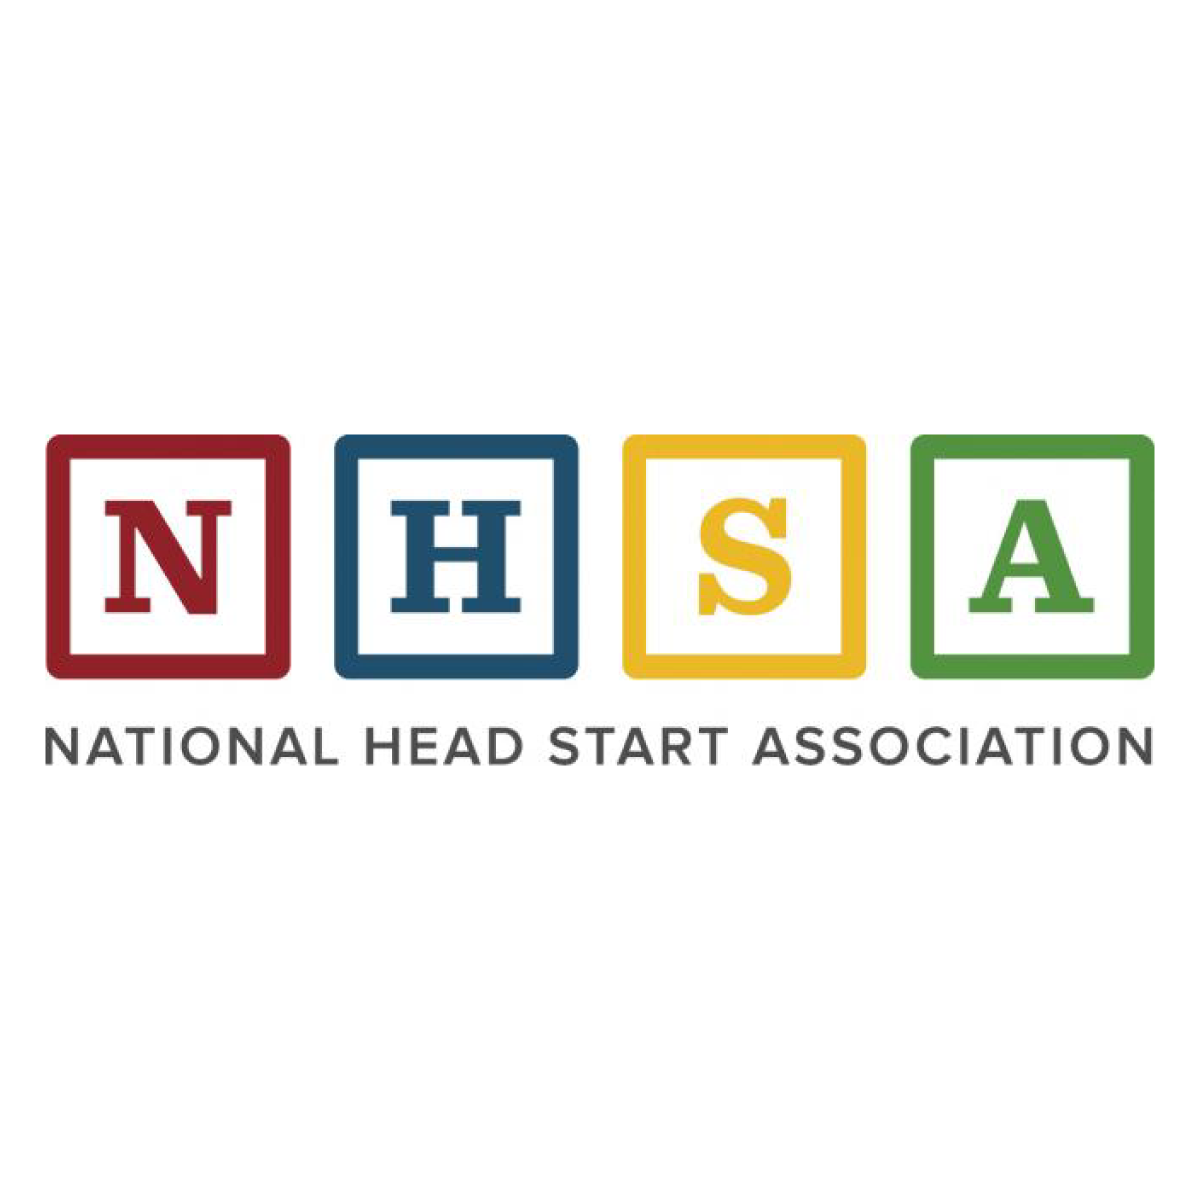 Asociación Nacional de Head Start
nhsa.org